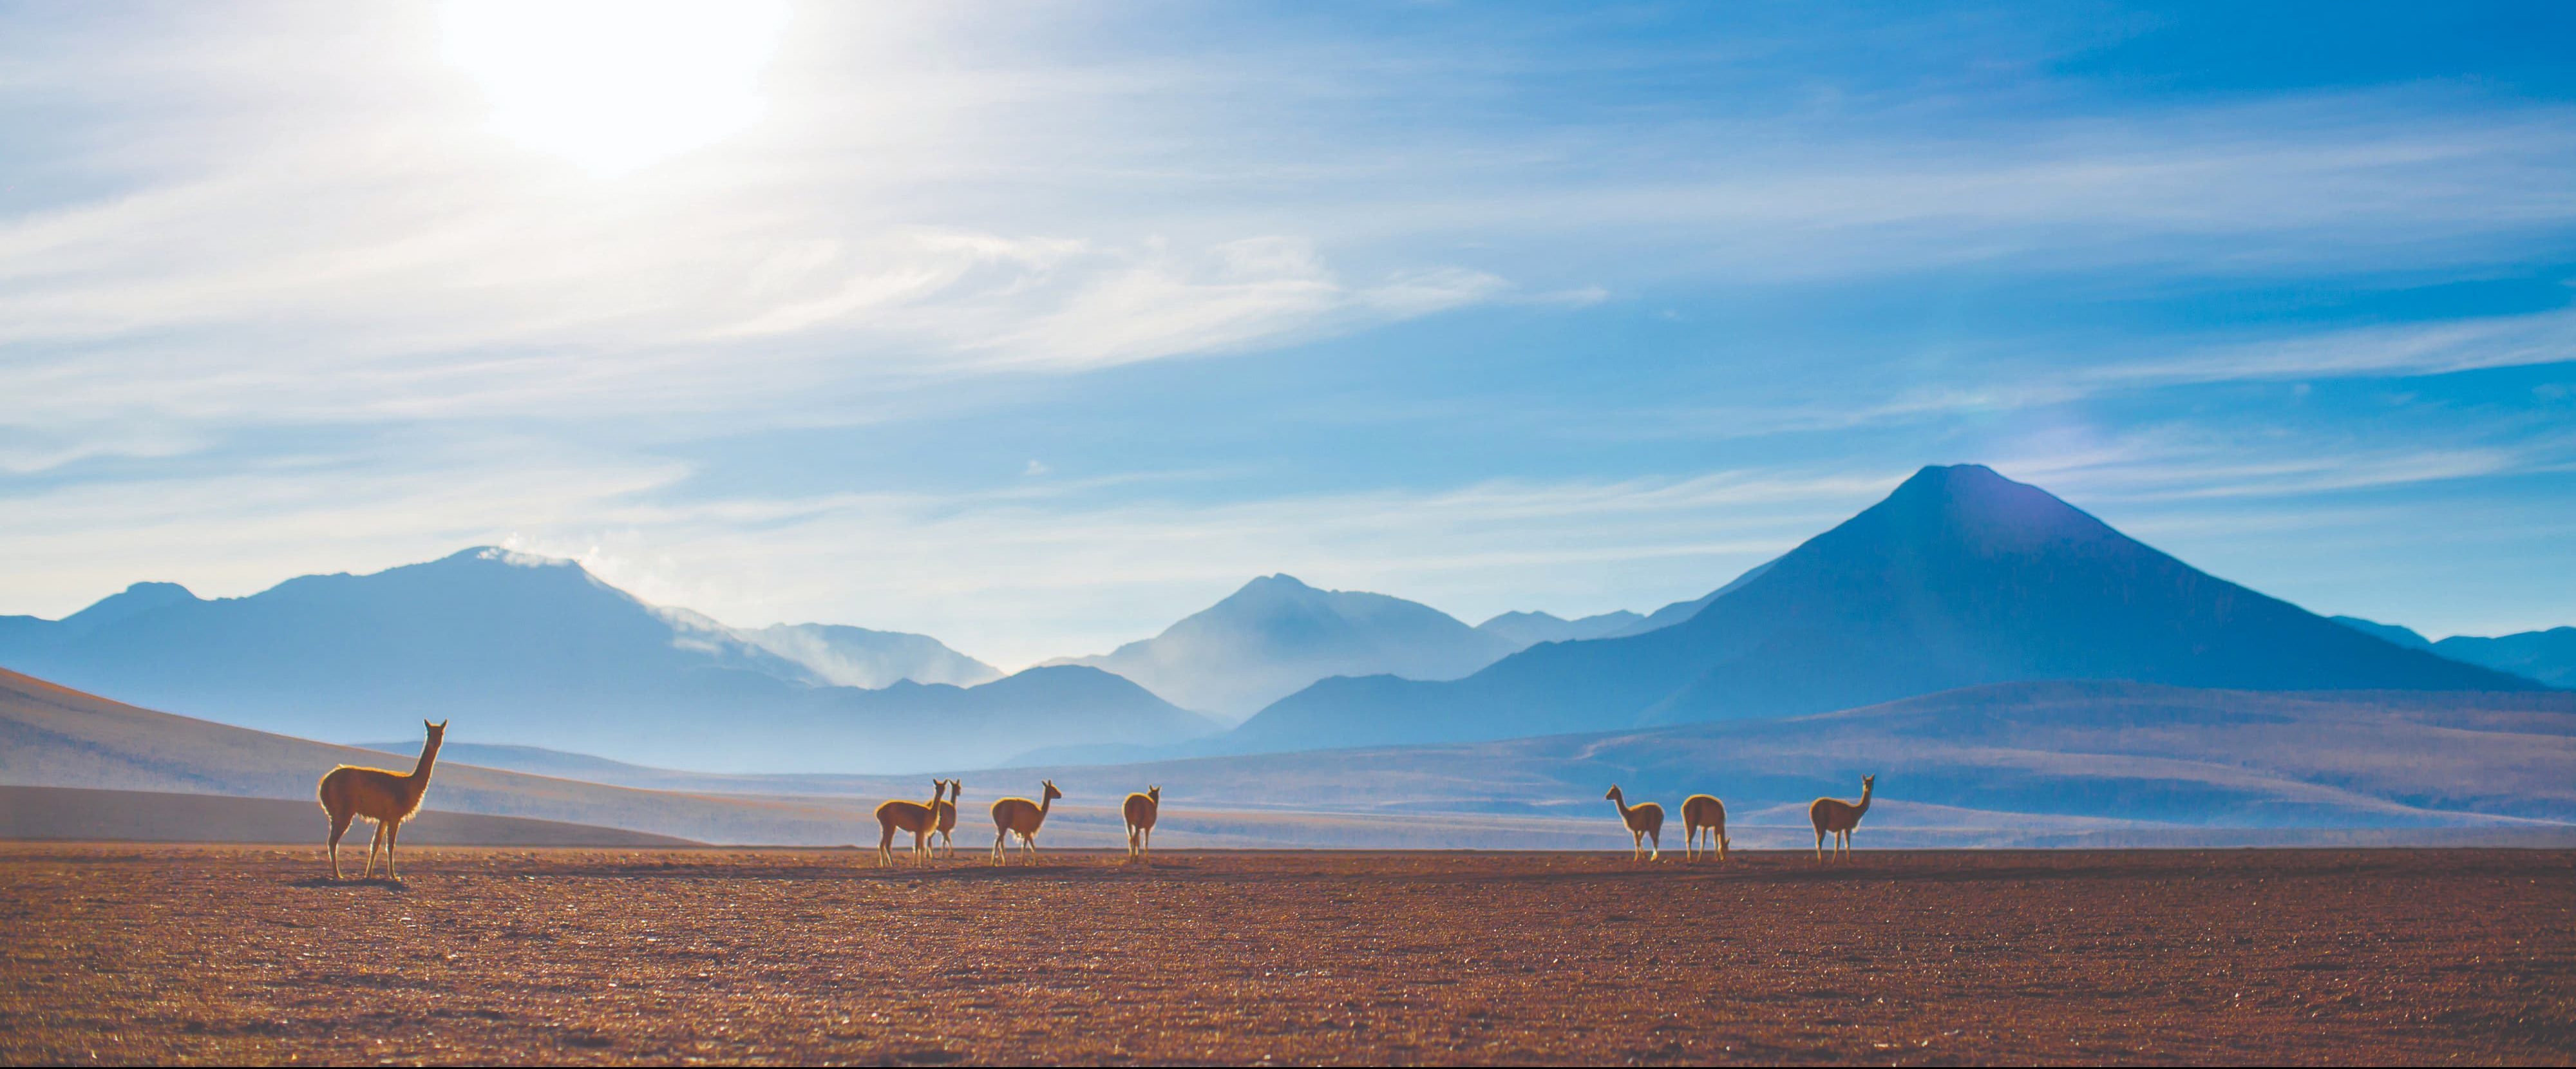 Deserto do Atacama reserva paisagens exóticas, em uma viagem para “outro mundo”